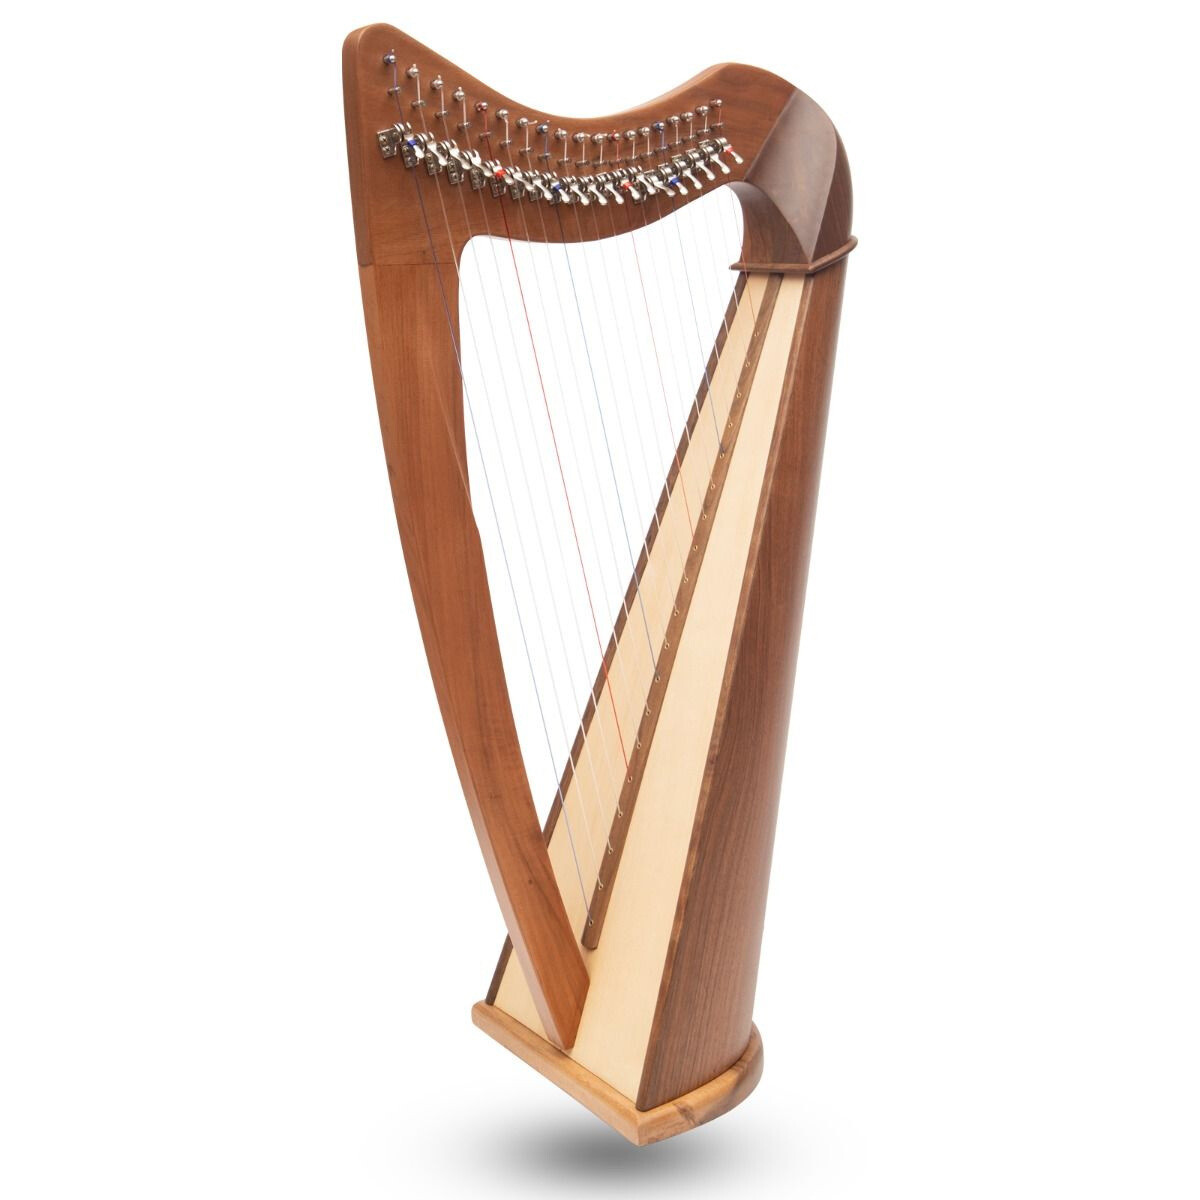 Claddagh Harp, 19 Strings, Walnut